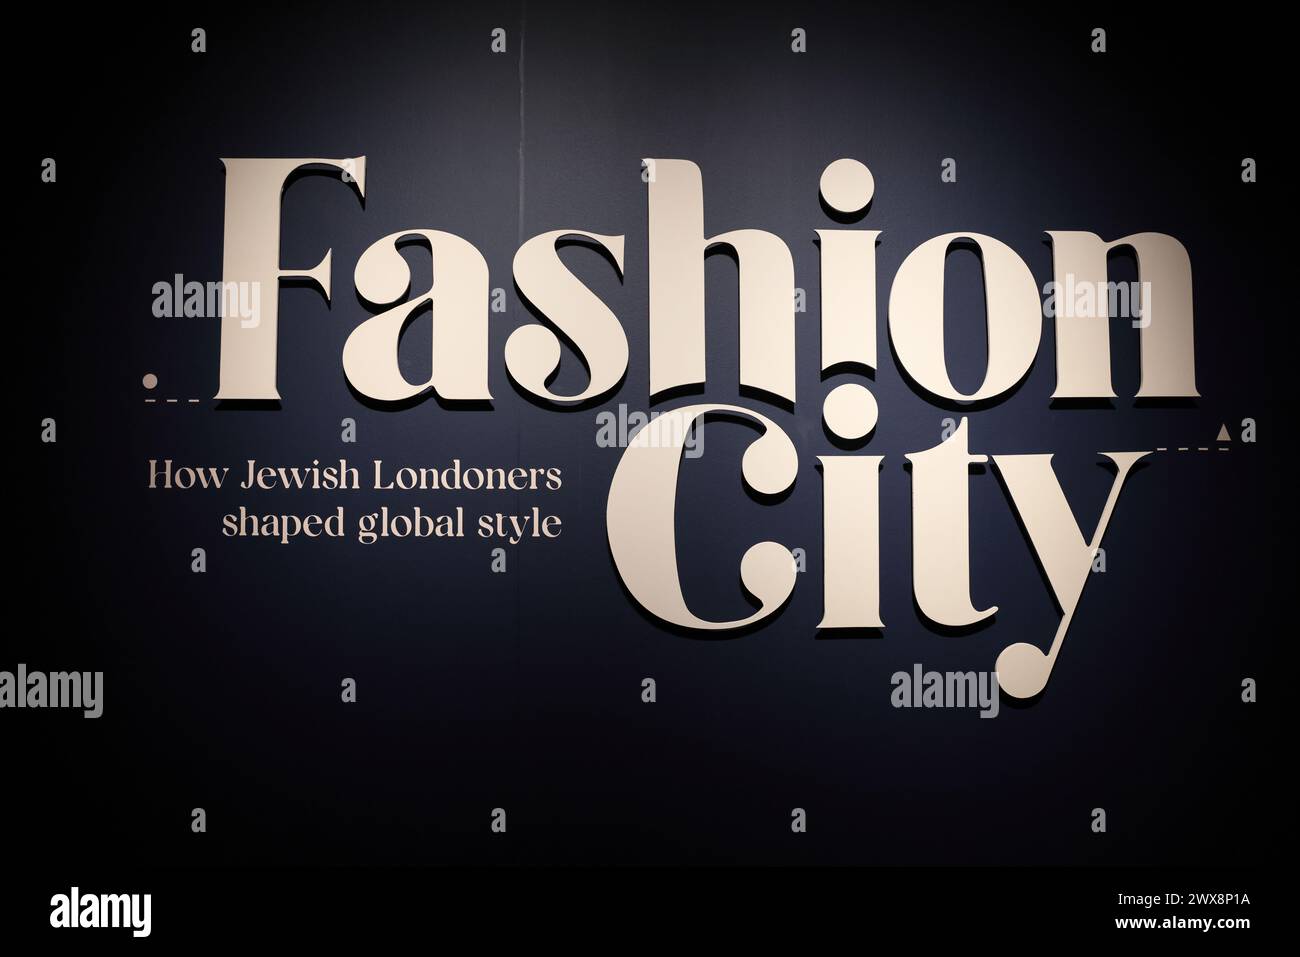 Fashion City, exposition fascinante montrant comment les Londoniens juifs ont façonné le style mondial, au Museum of London Docklands, Royaume-Uni Banque D'Images